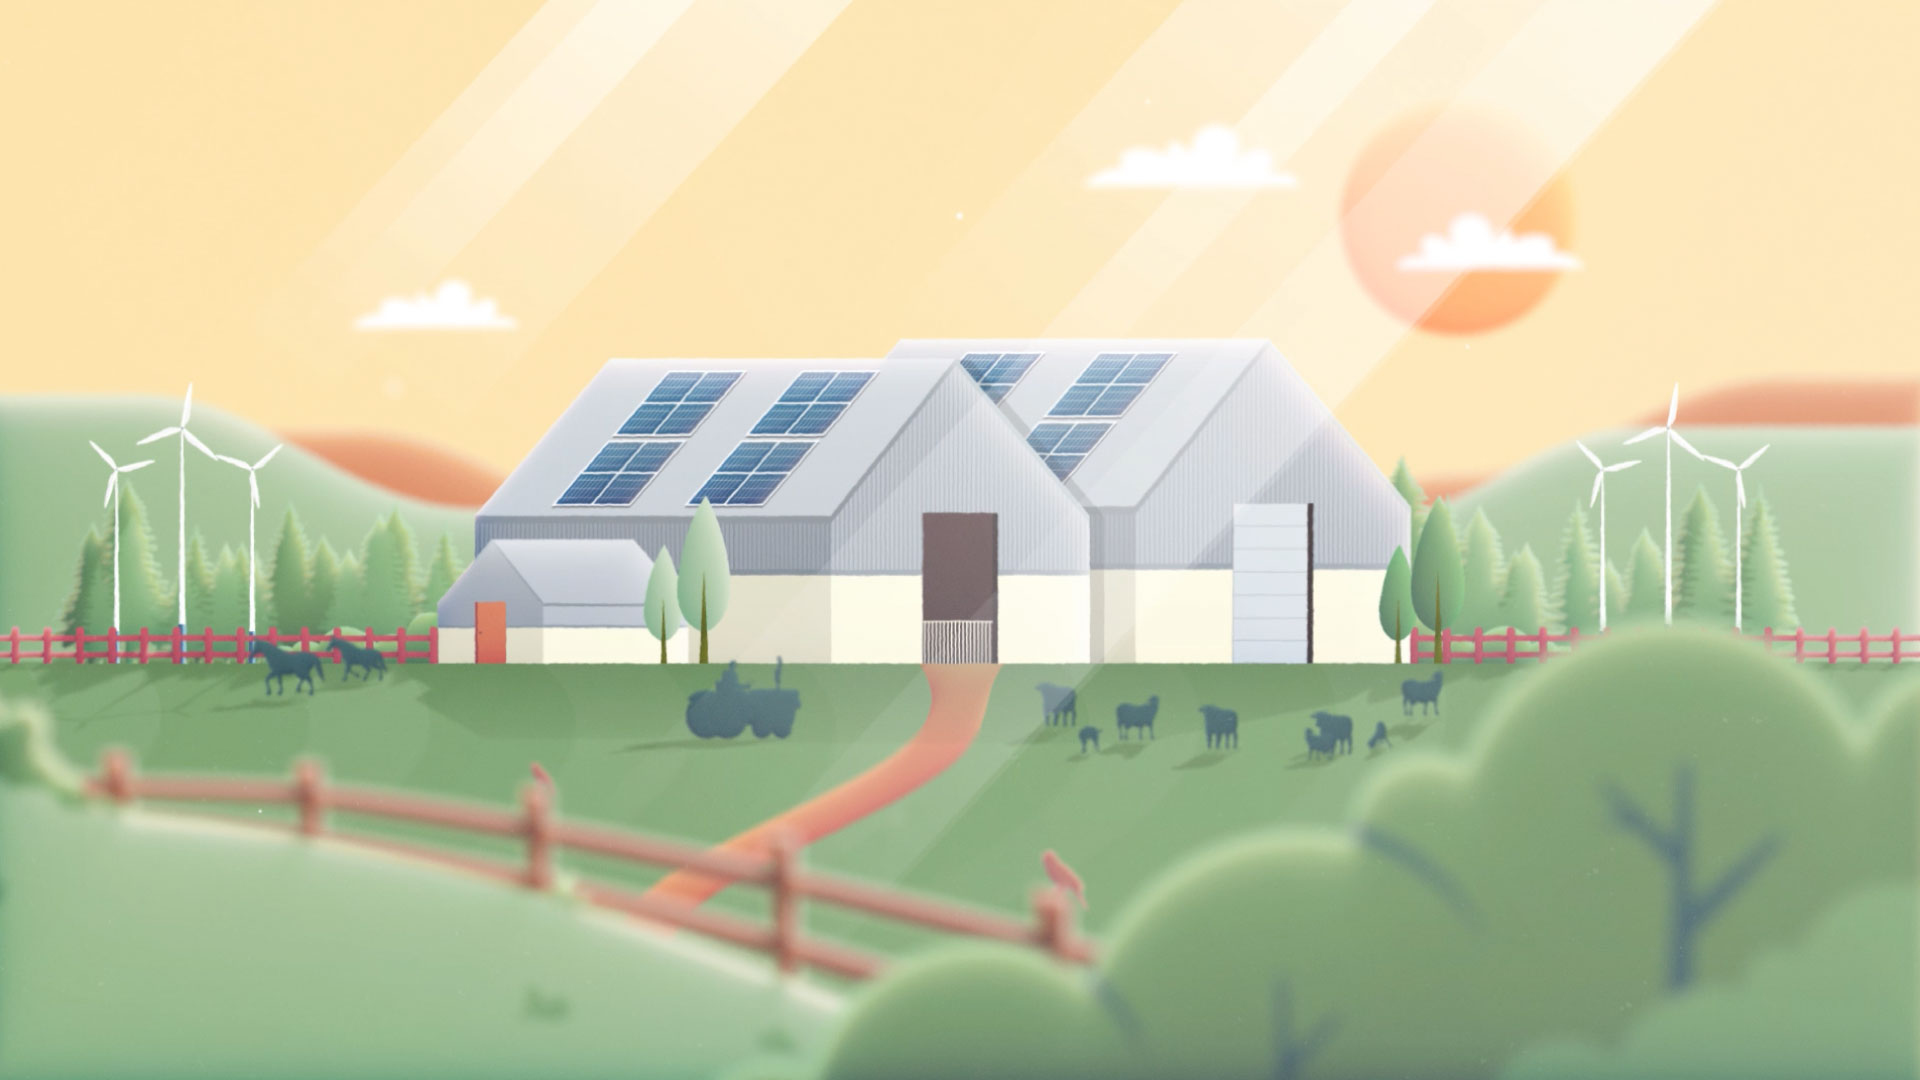 Animated farm house